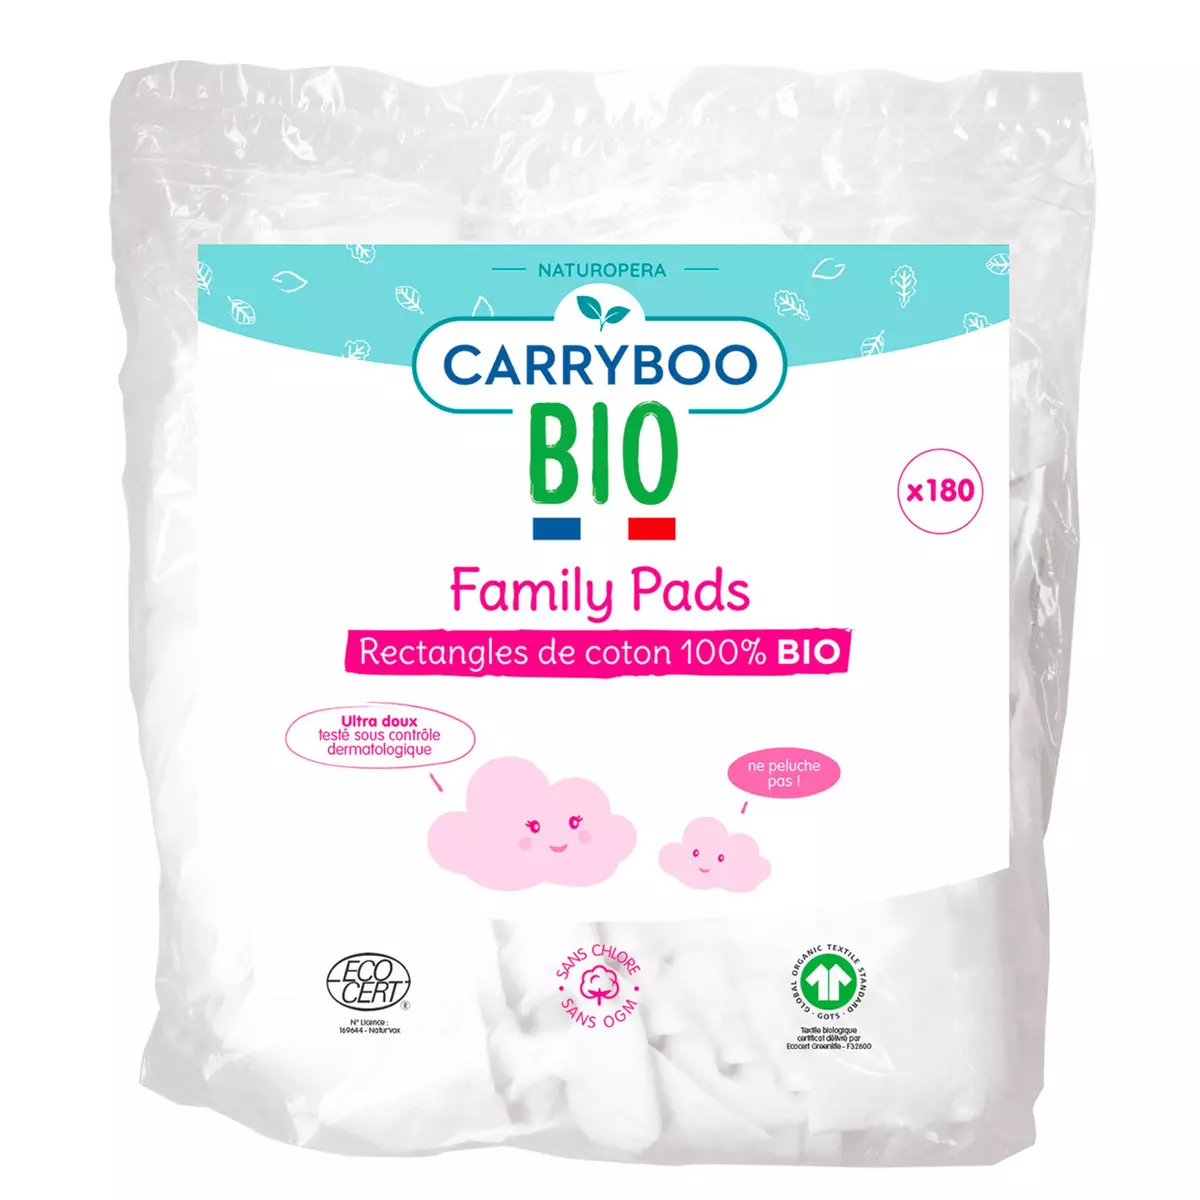 CARRYBOO BIO Family pads rectangles de coton 100% bio ultra doux 180 cotons